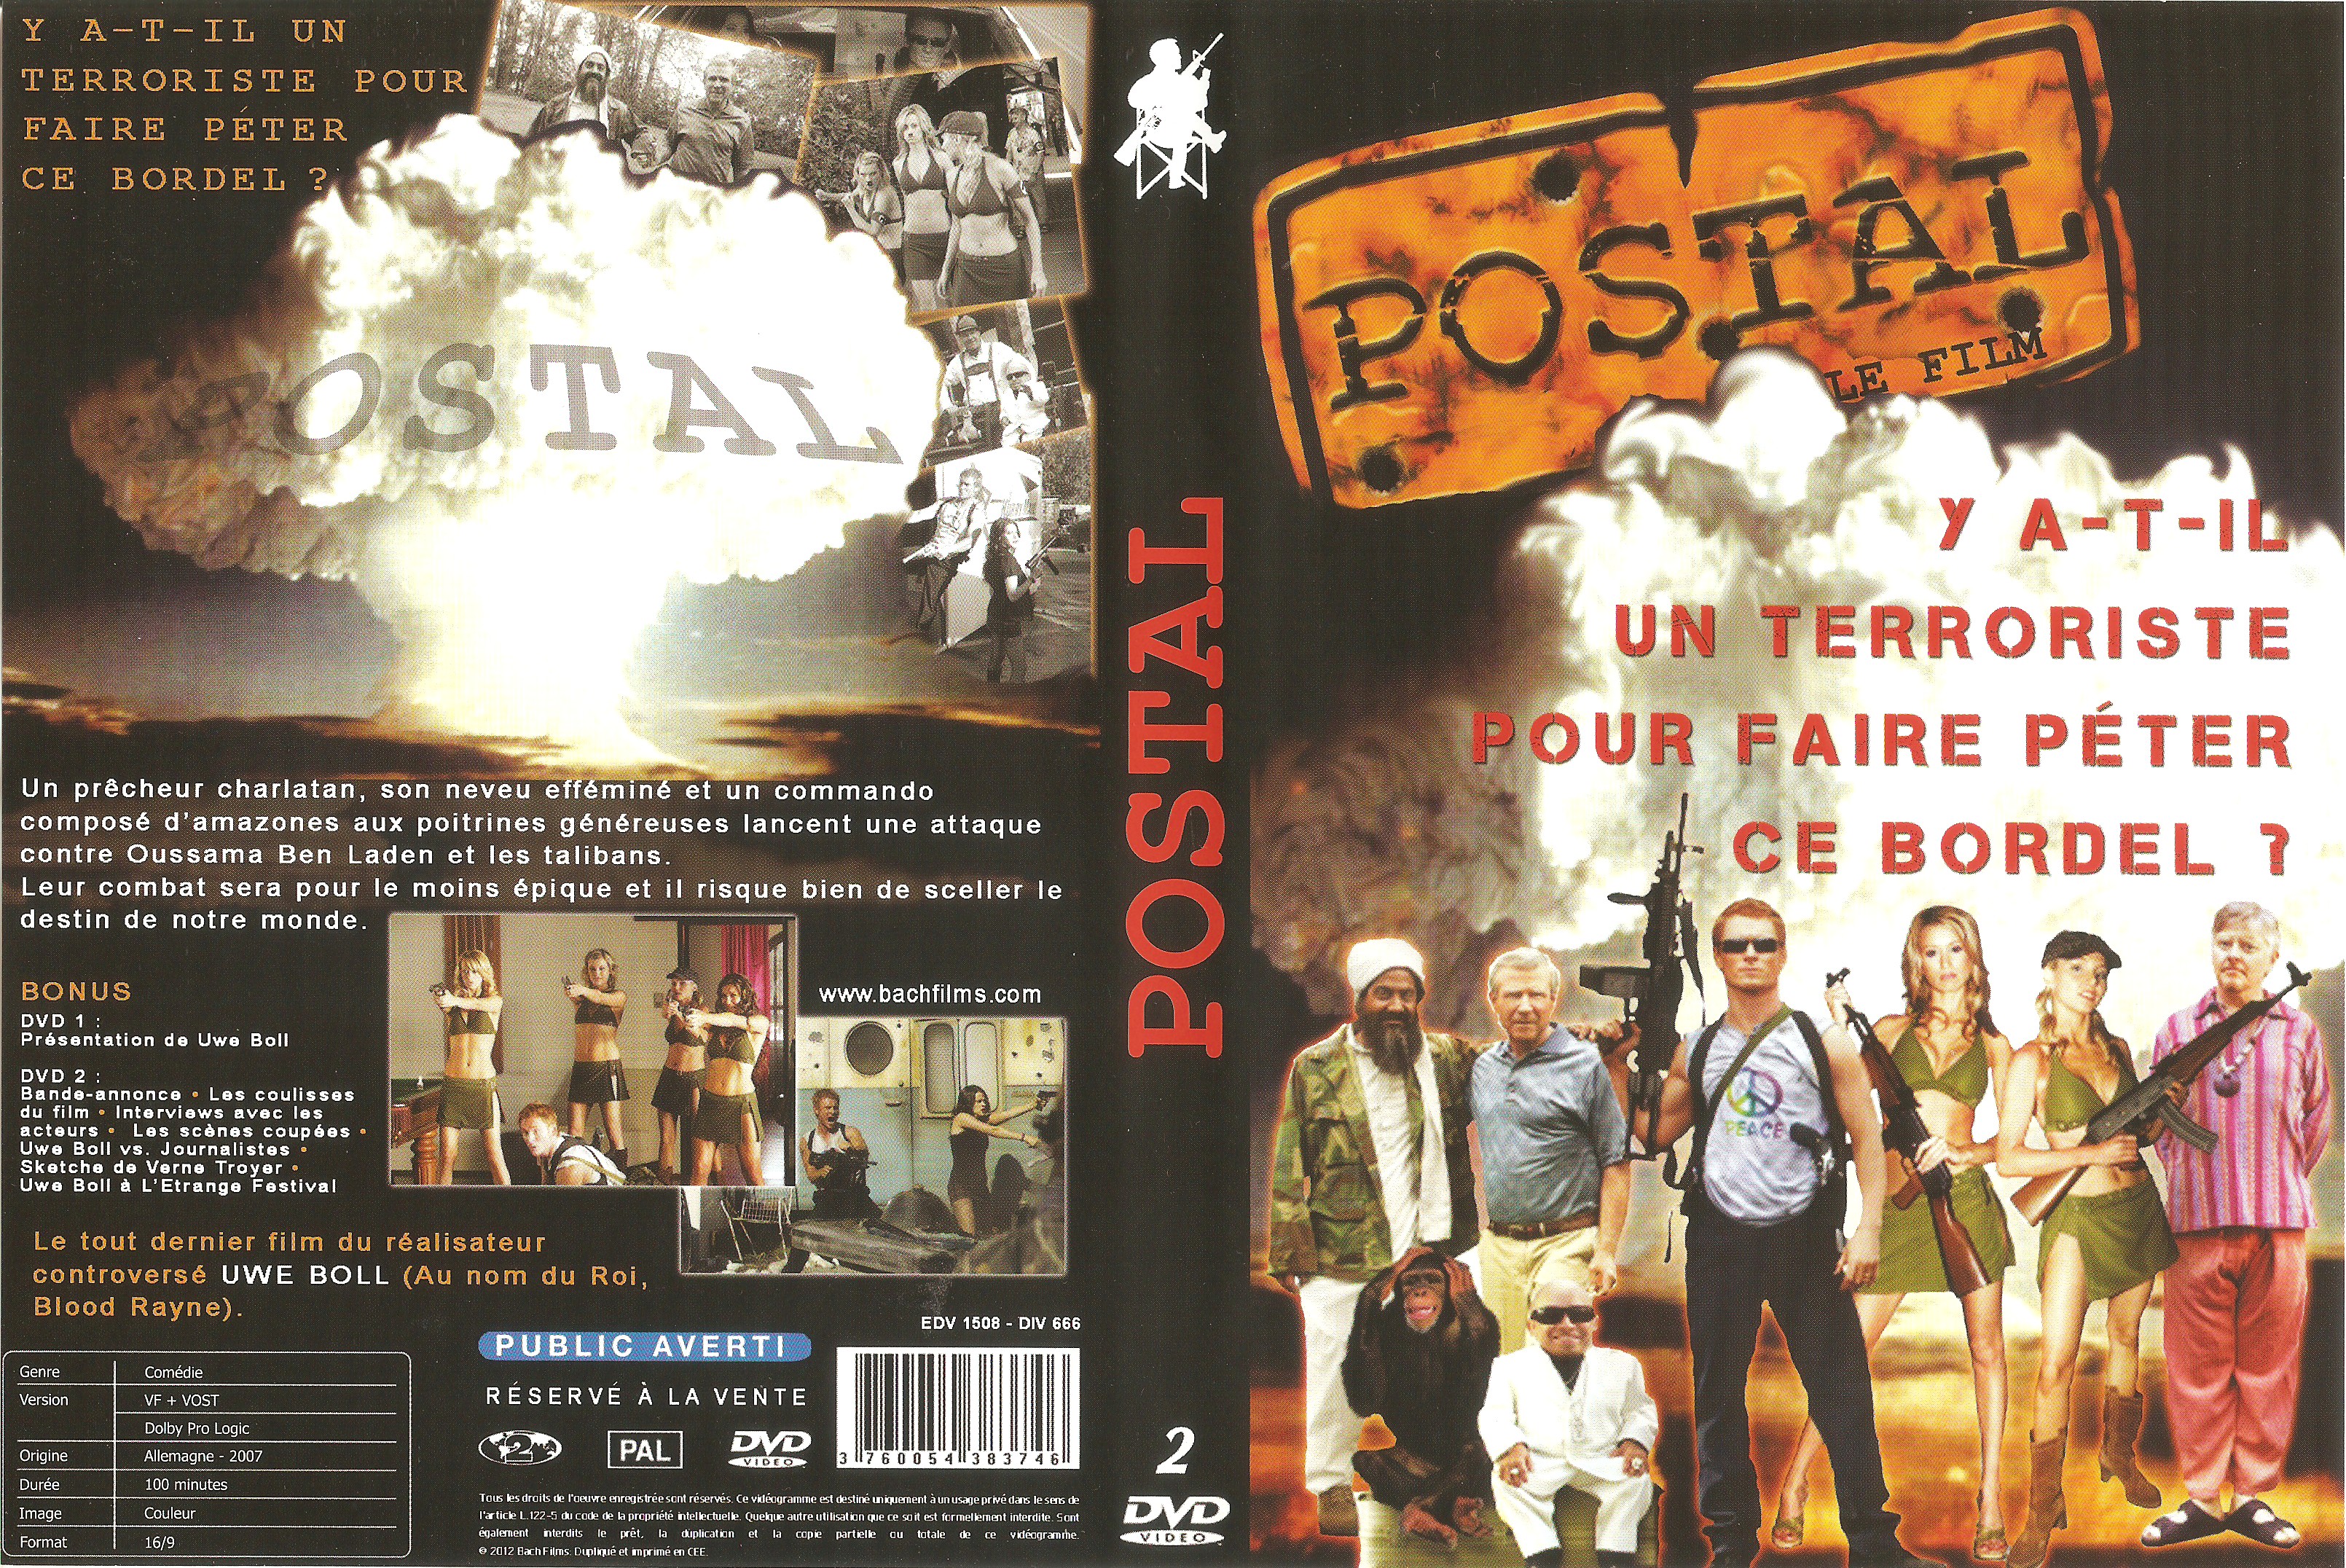 Jaquette DVD Postal v2